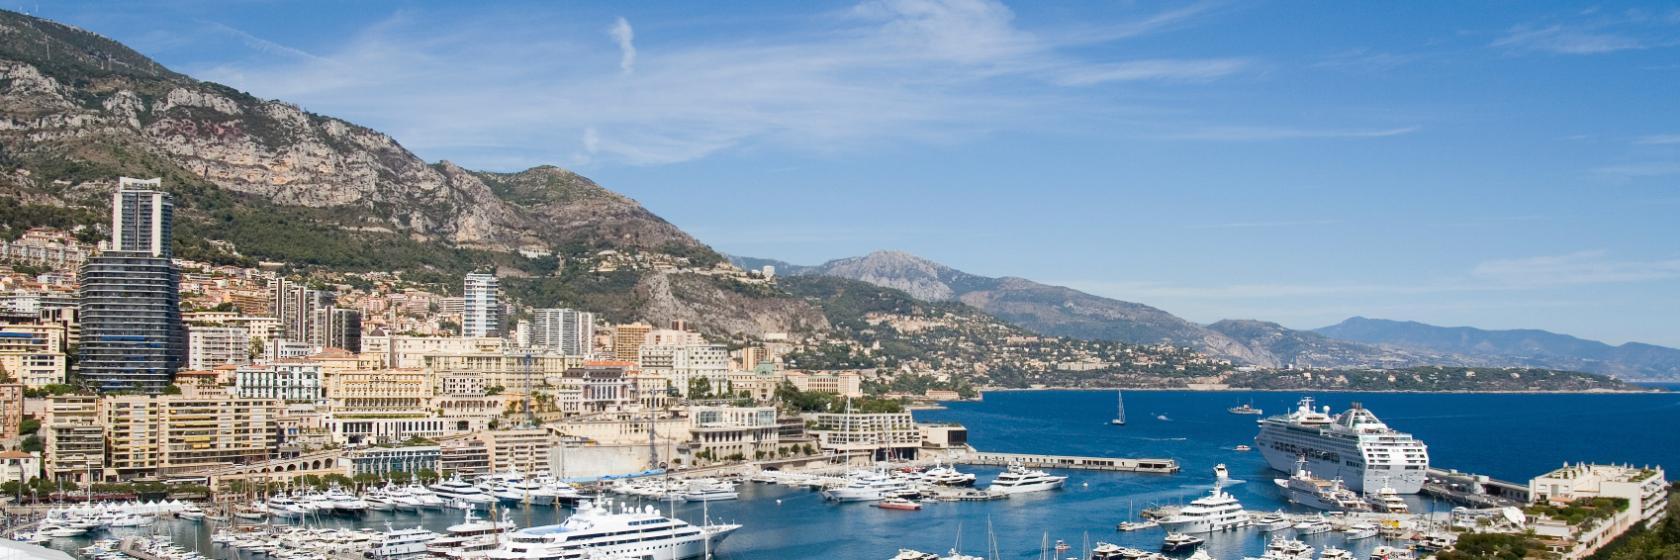 10 Best Monte Carlo Hotels, Monaco (From $132)